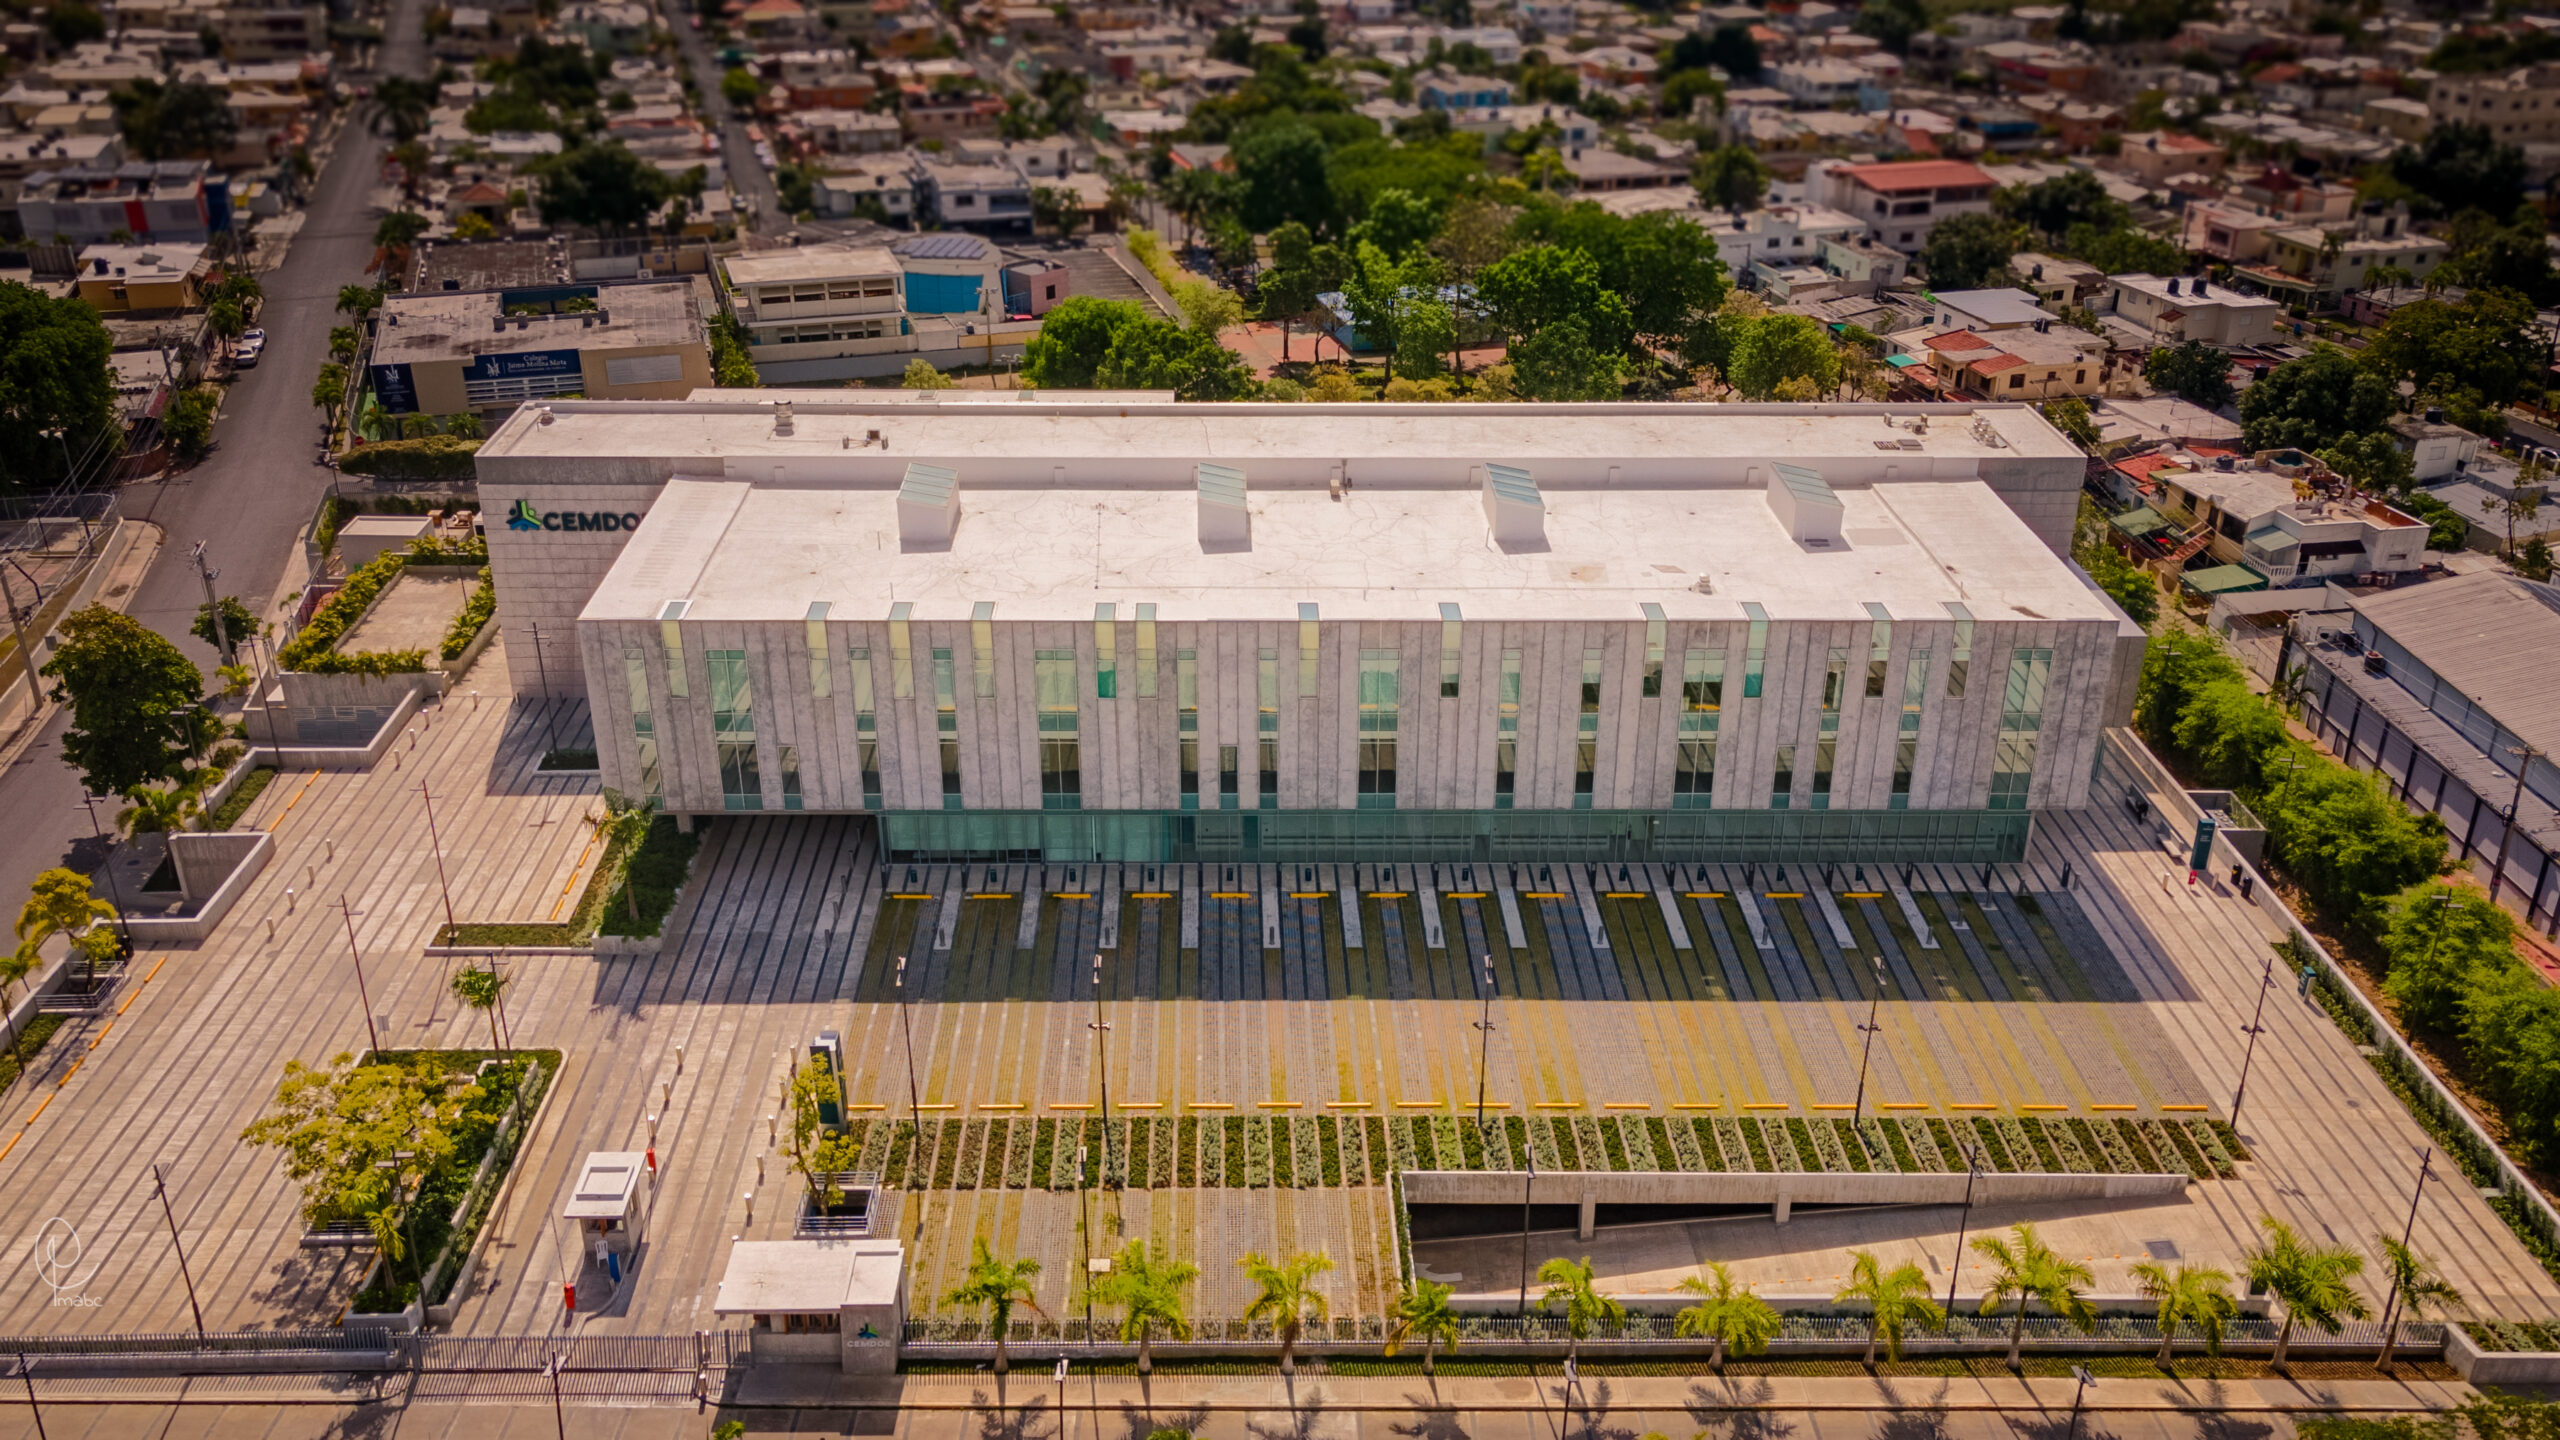 CEMDOE – Nuevo concepto en medicina y servicio en RD, edificio Green Building